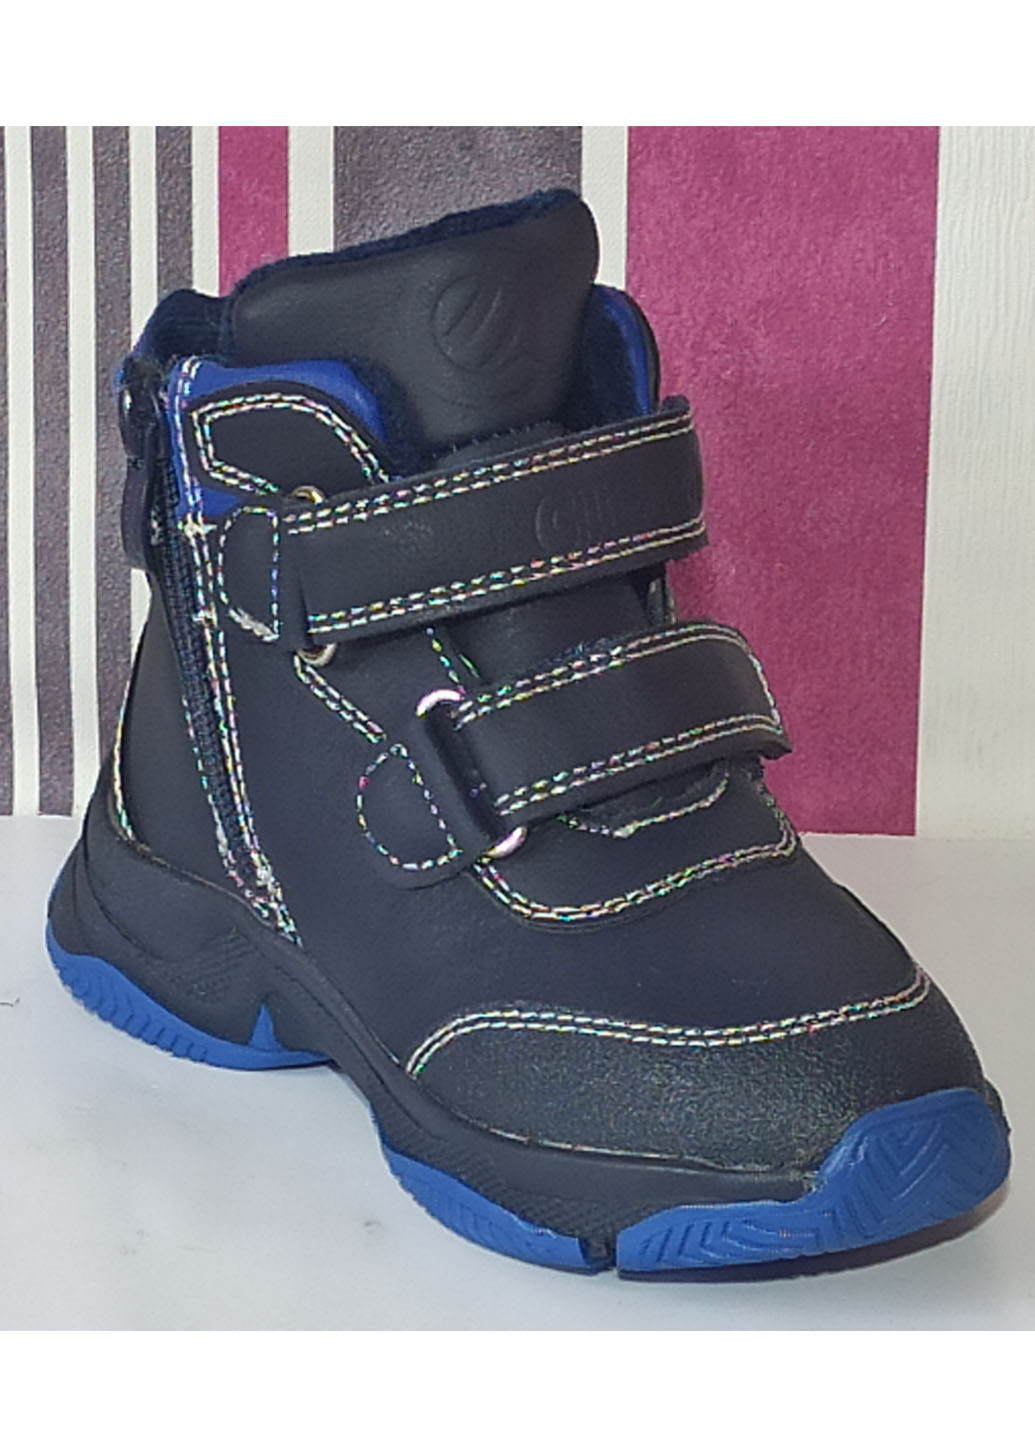 Синие повседневные зимние зимние ботинки для мальчика на овчине н253 синие 26-17,1см Clibee